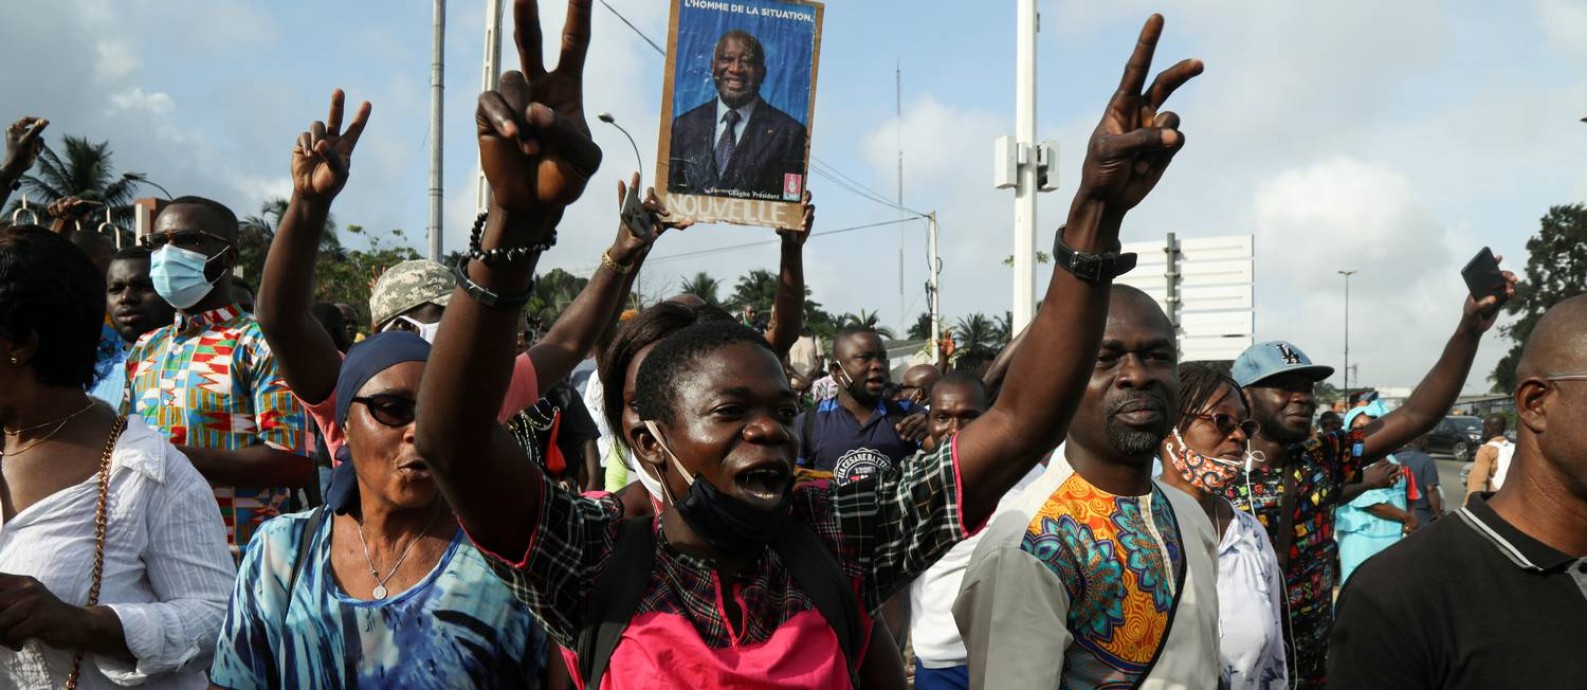 Apoiadores do ex-presidente da Costa do Marfim, Lauren Gbagbo, em manifestação na cidade de Abidjan Foto: Luc Gnago / Reuters